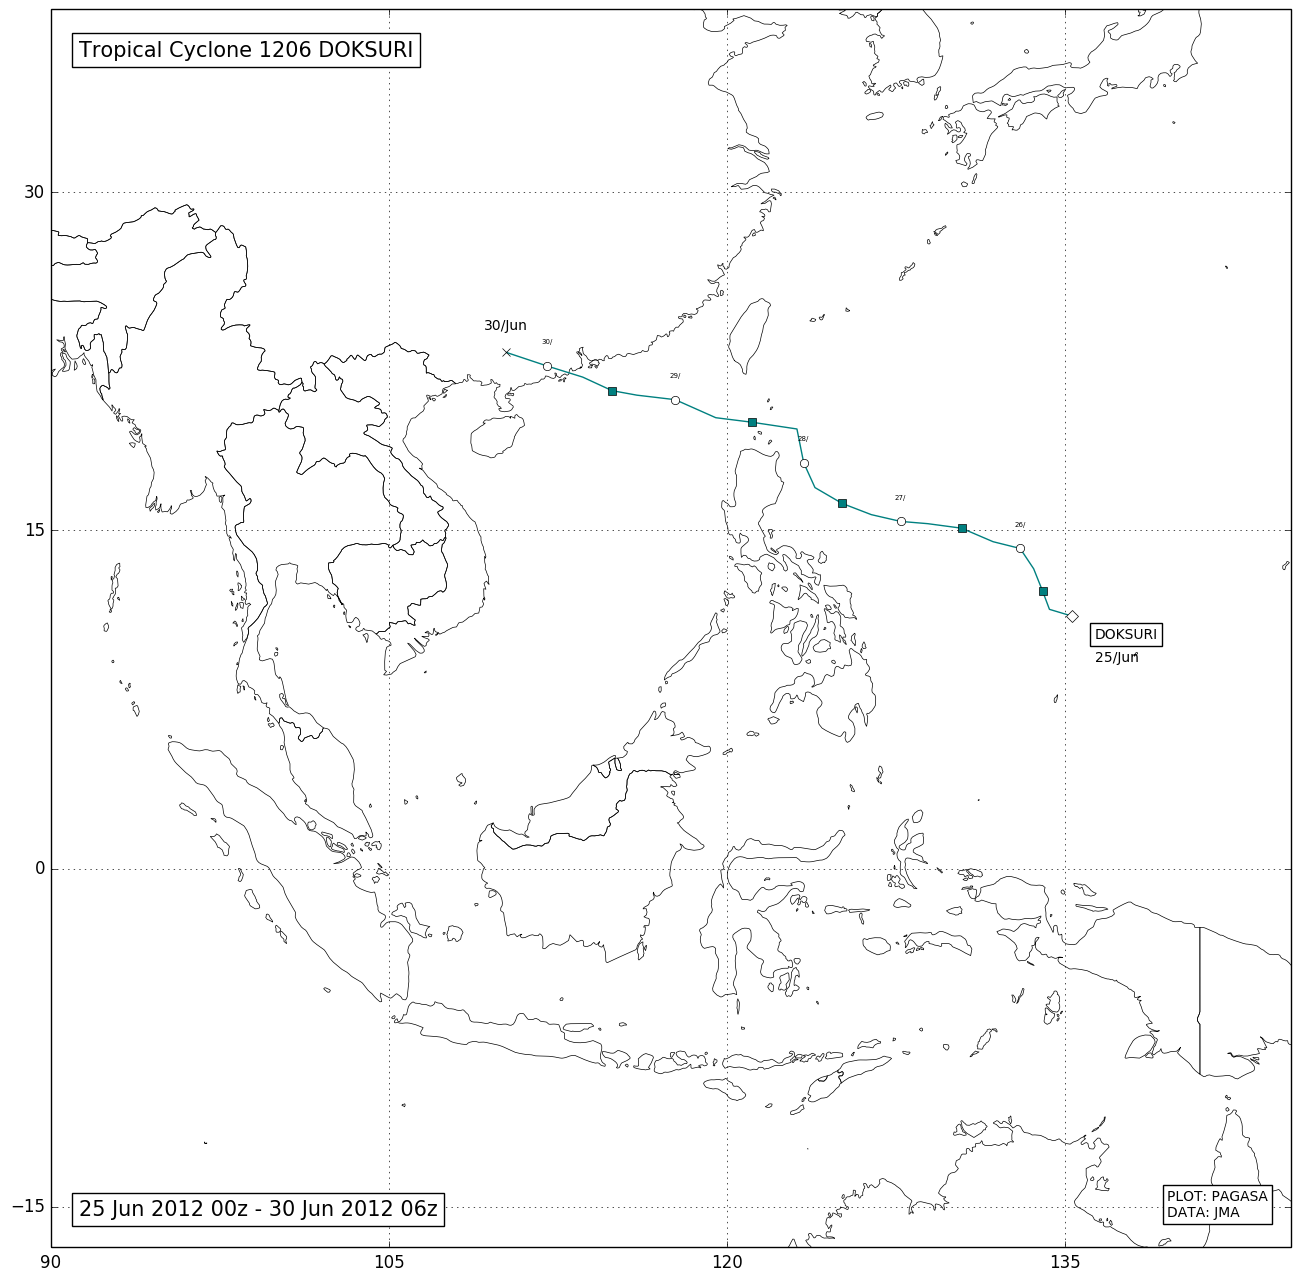 1206-doksuri-sea-climate-monitoring-project